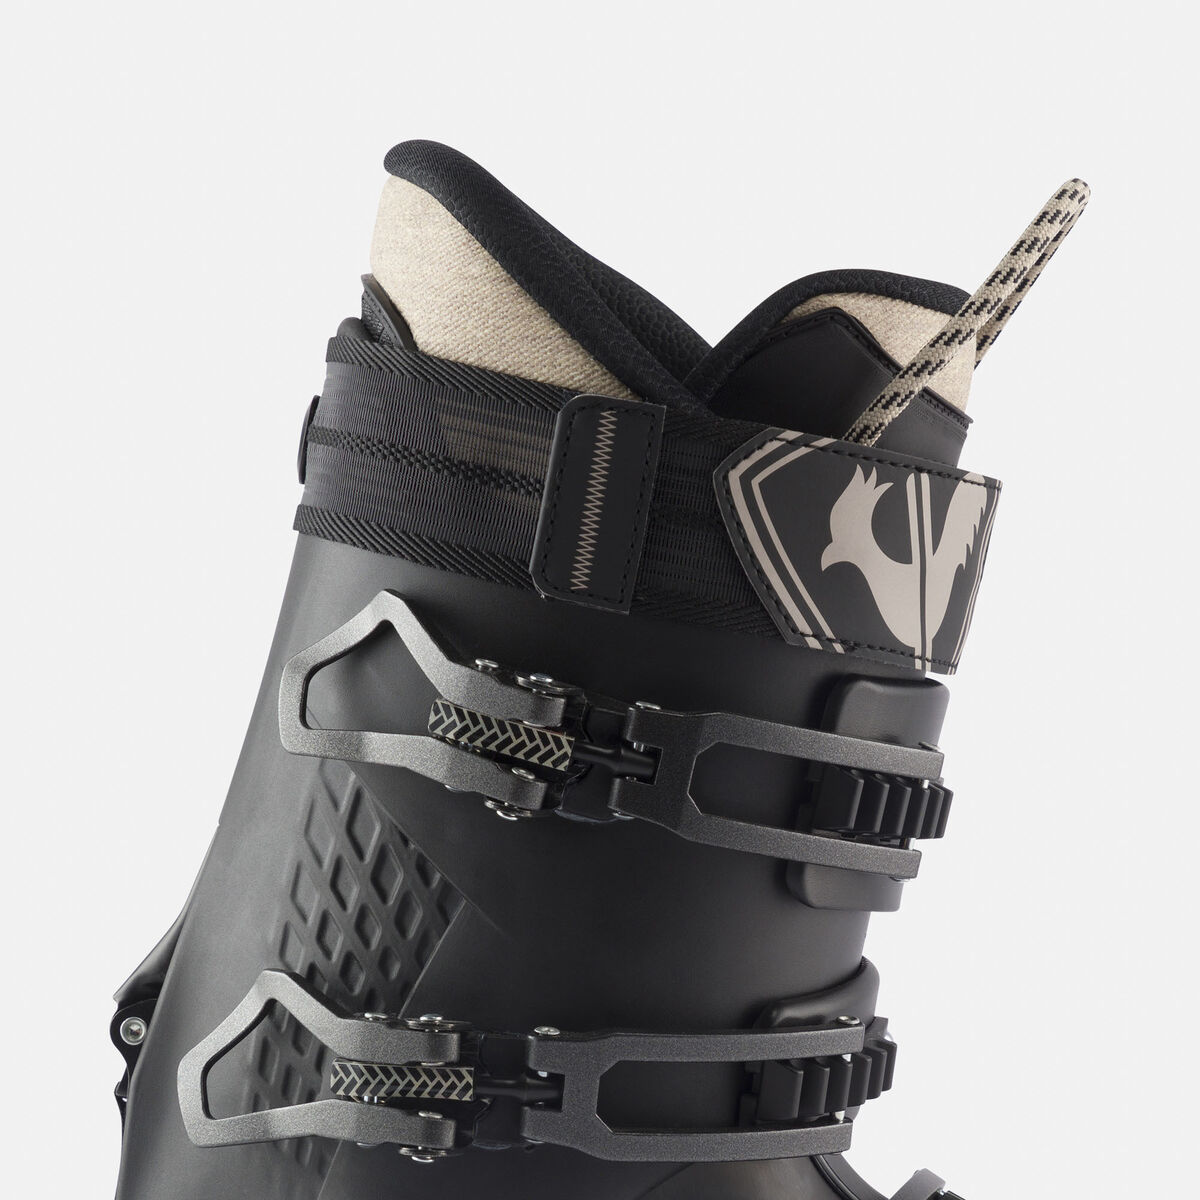 Men's All Mountain Ski Boots Alltrack Pro 100 MV